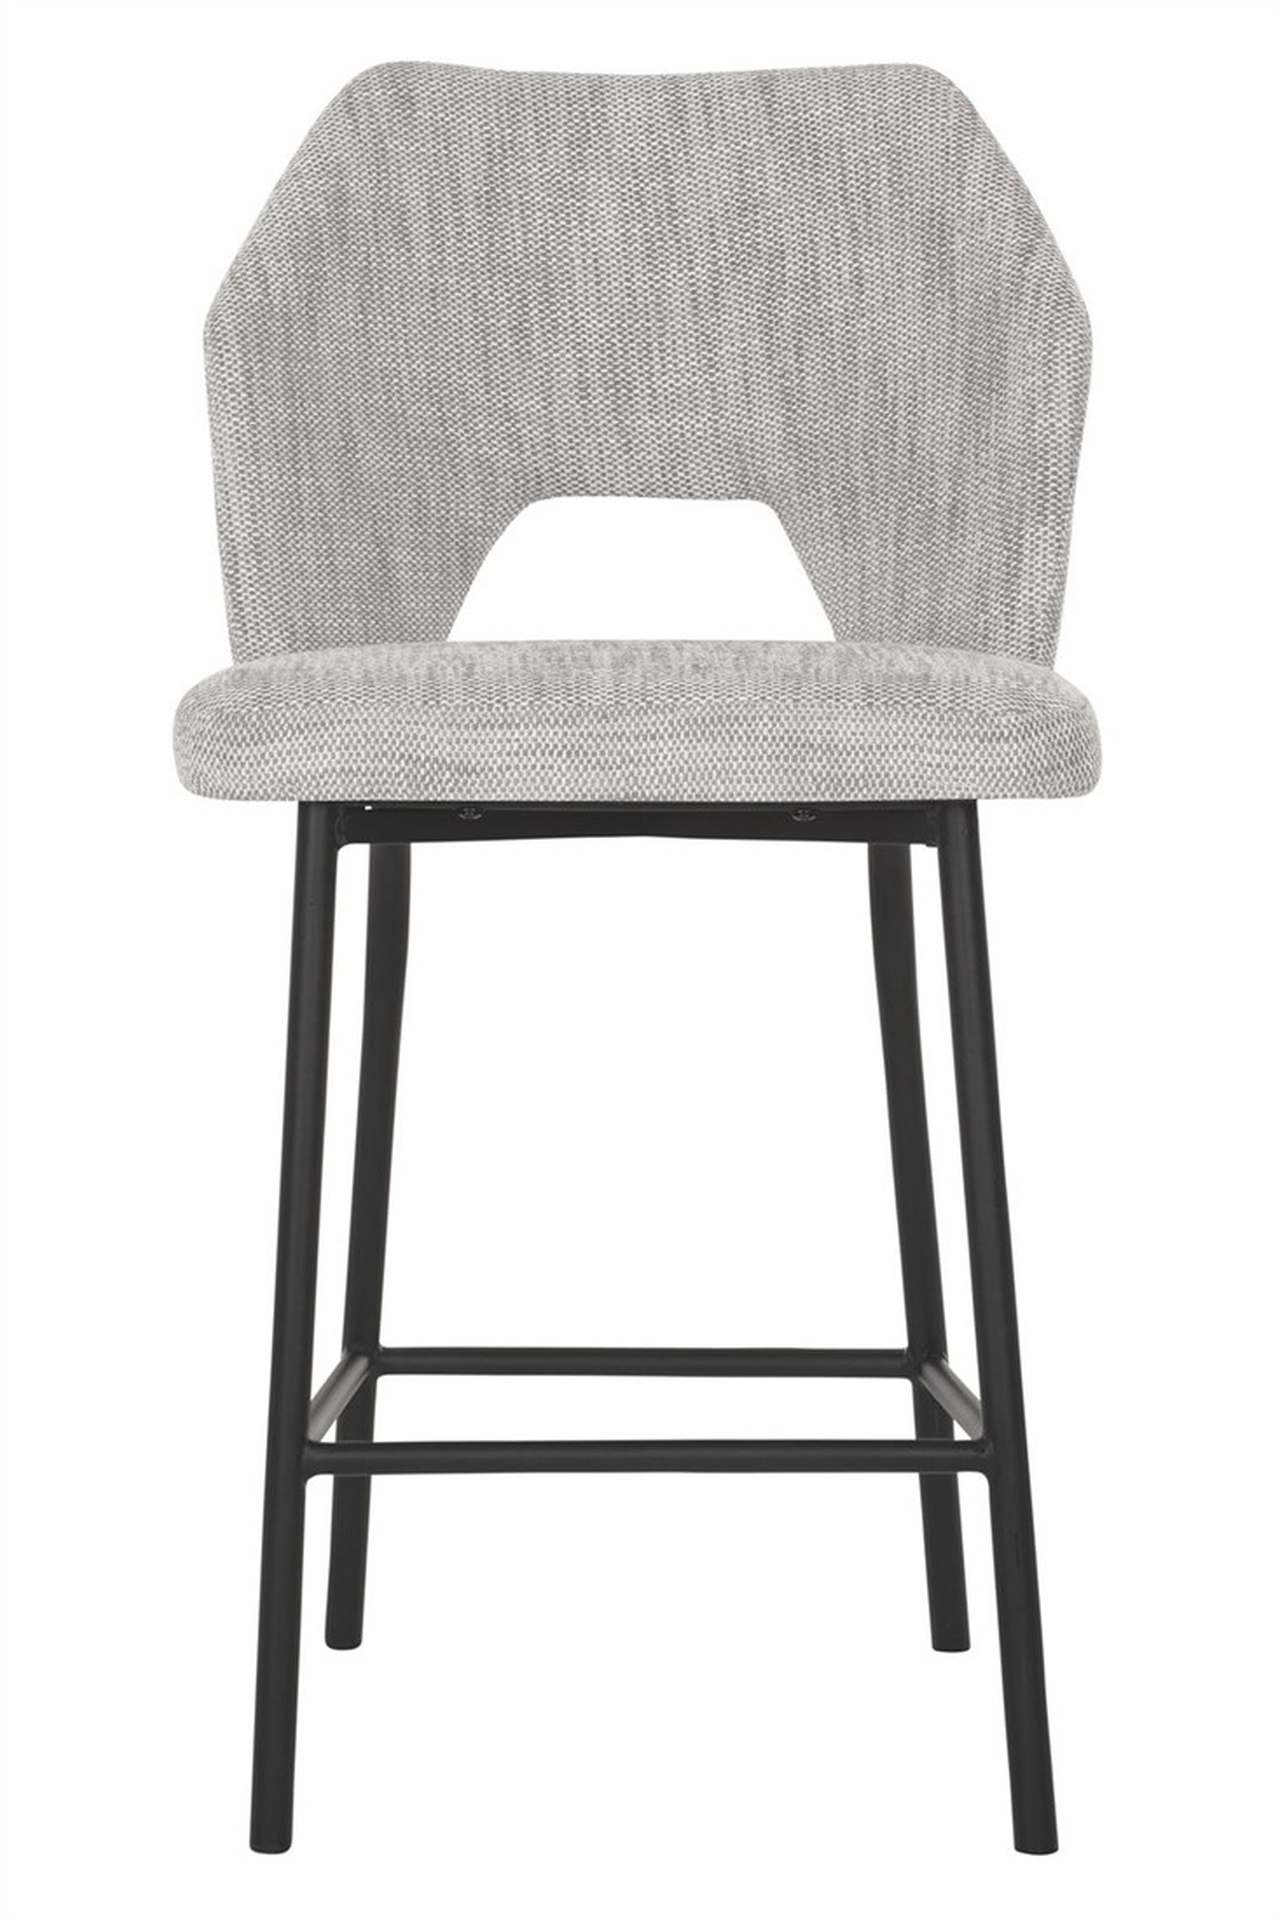 Der Barstuhl Bloom überzeugt mit seinem modernem aber auch schlichtem Design. Gefertigt wurde der Stuhl aus einem Polaris Stoff, welcher einen Hellgrauen Farbton besitzt. Das Gestell ist aus Metall und ist Schwarz.